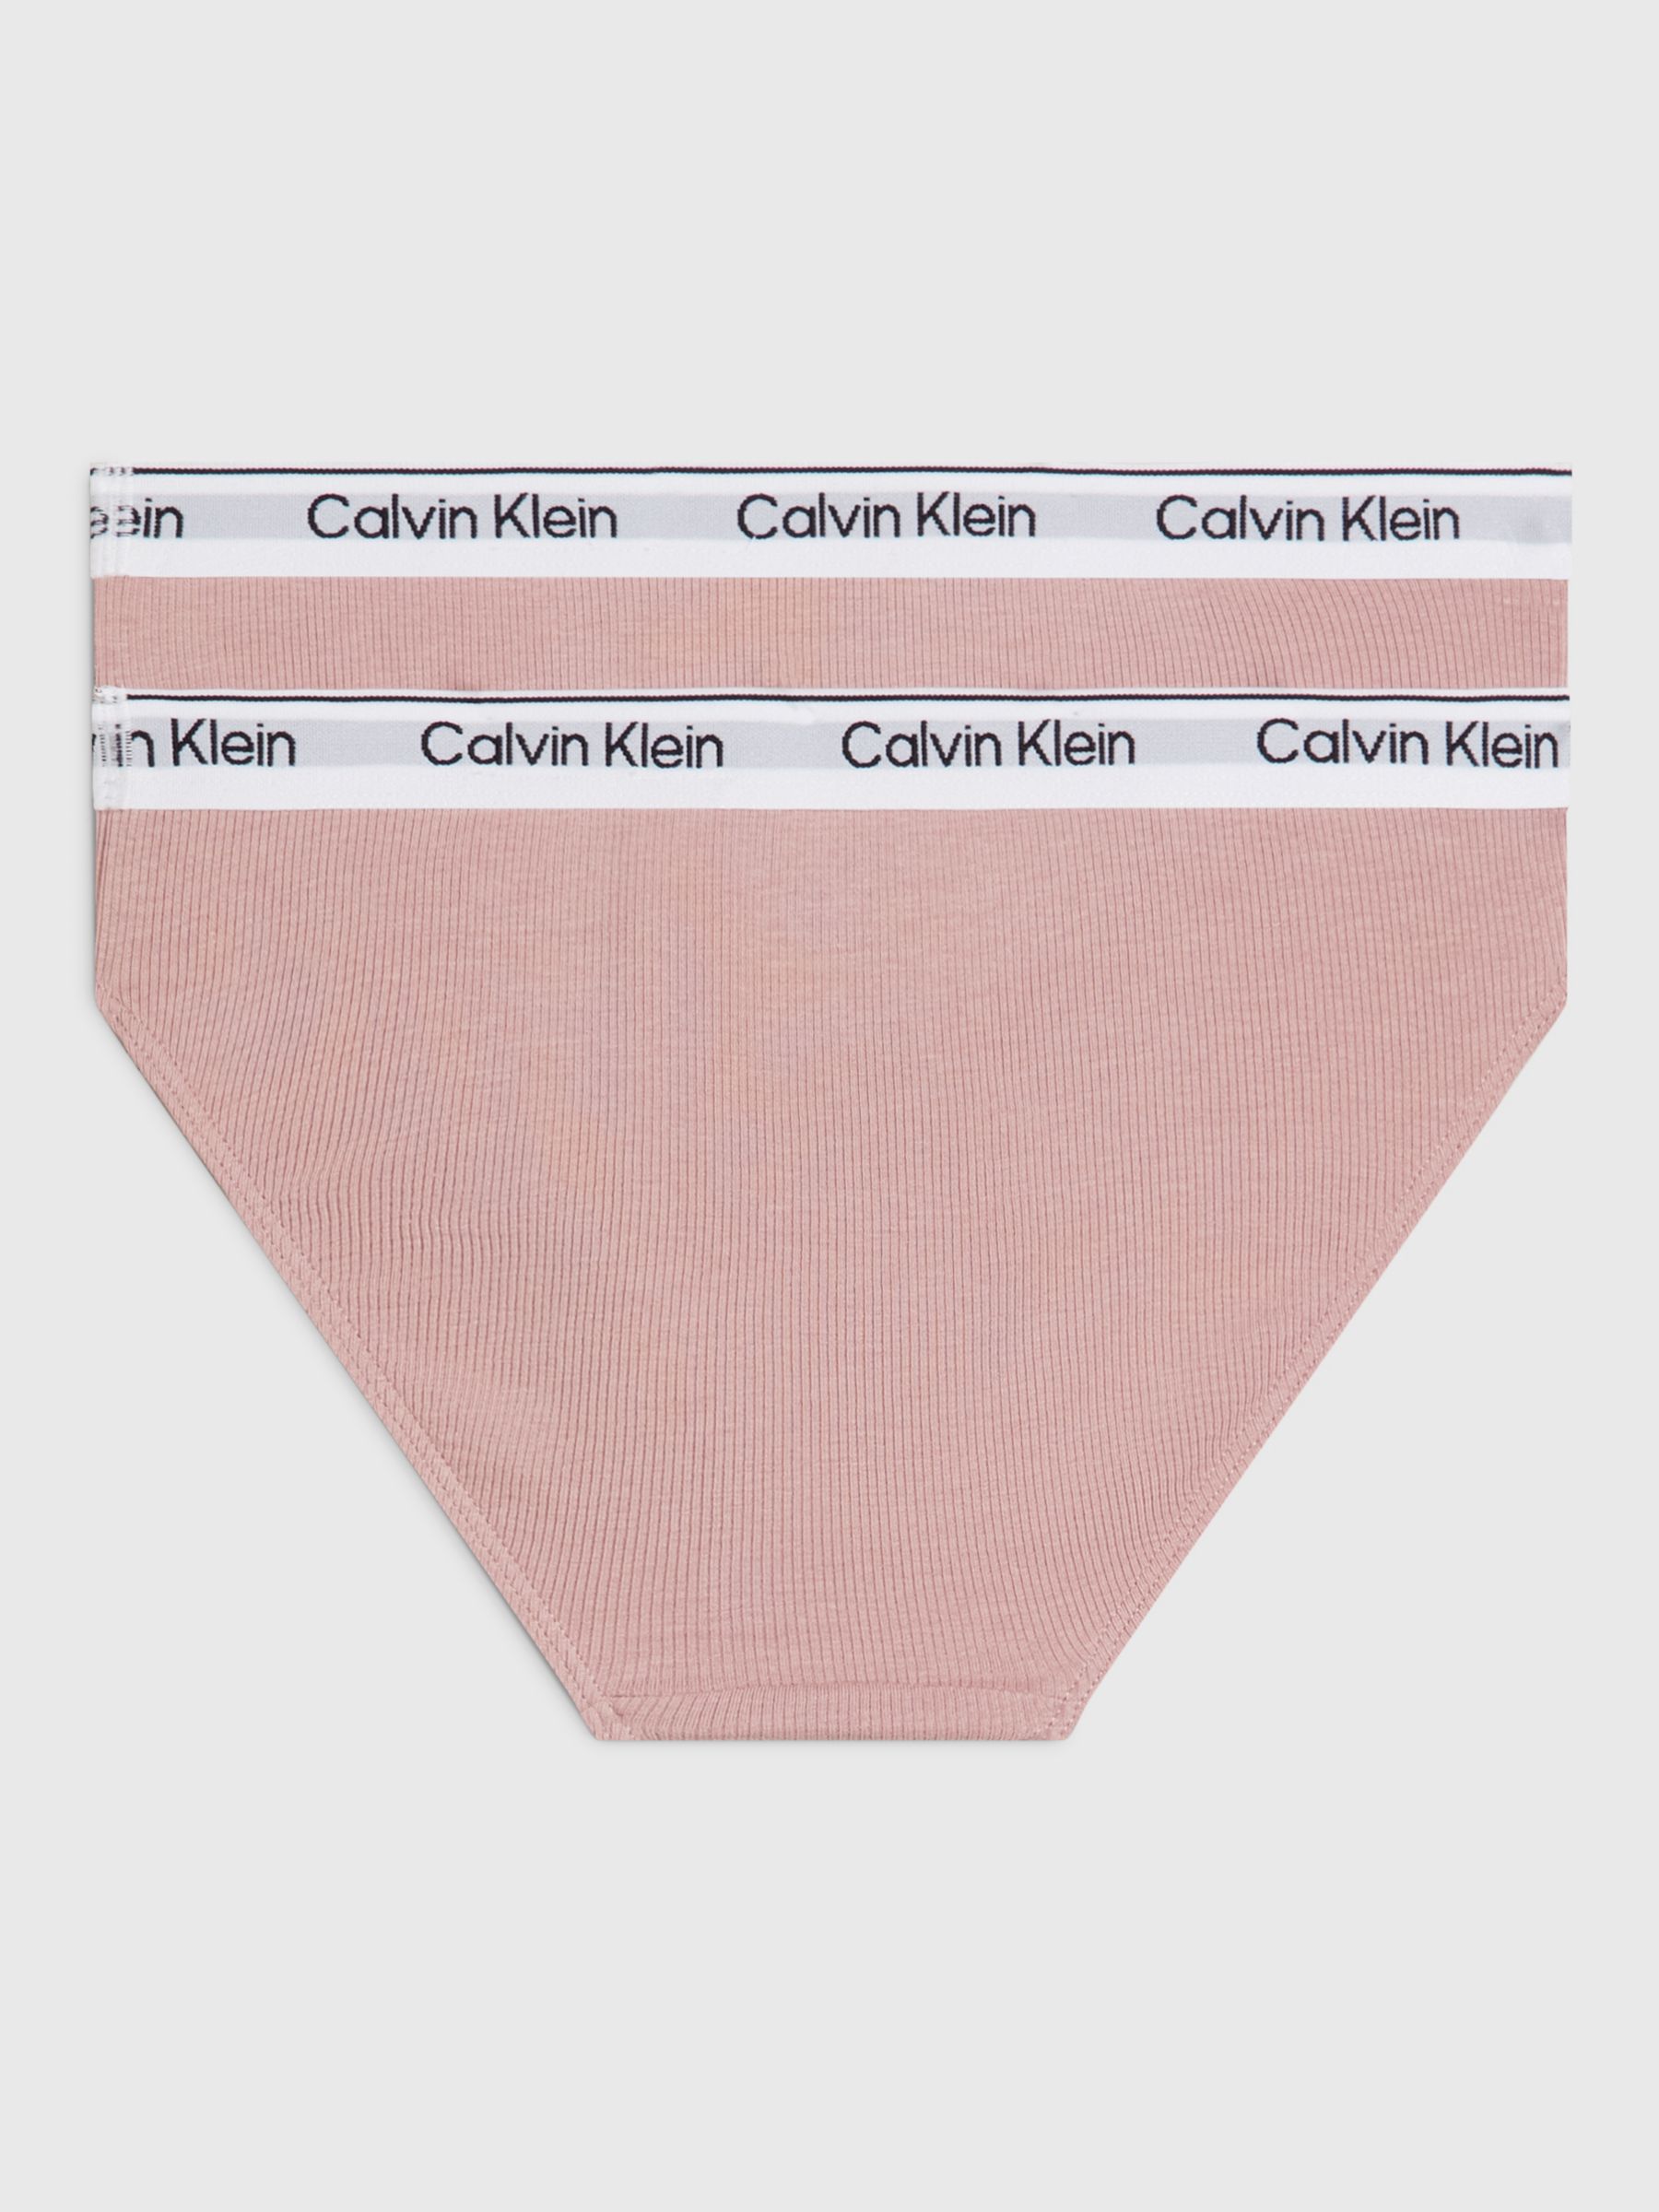 Calvin Klein Kids' Bikini Briefs, Pack of 2, Pink, 10-12Y